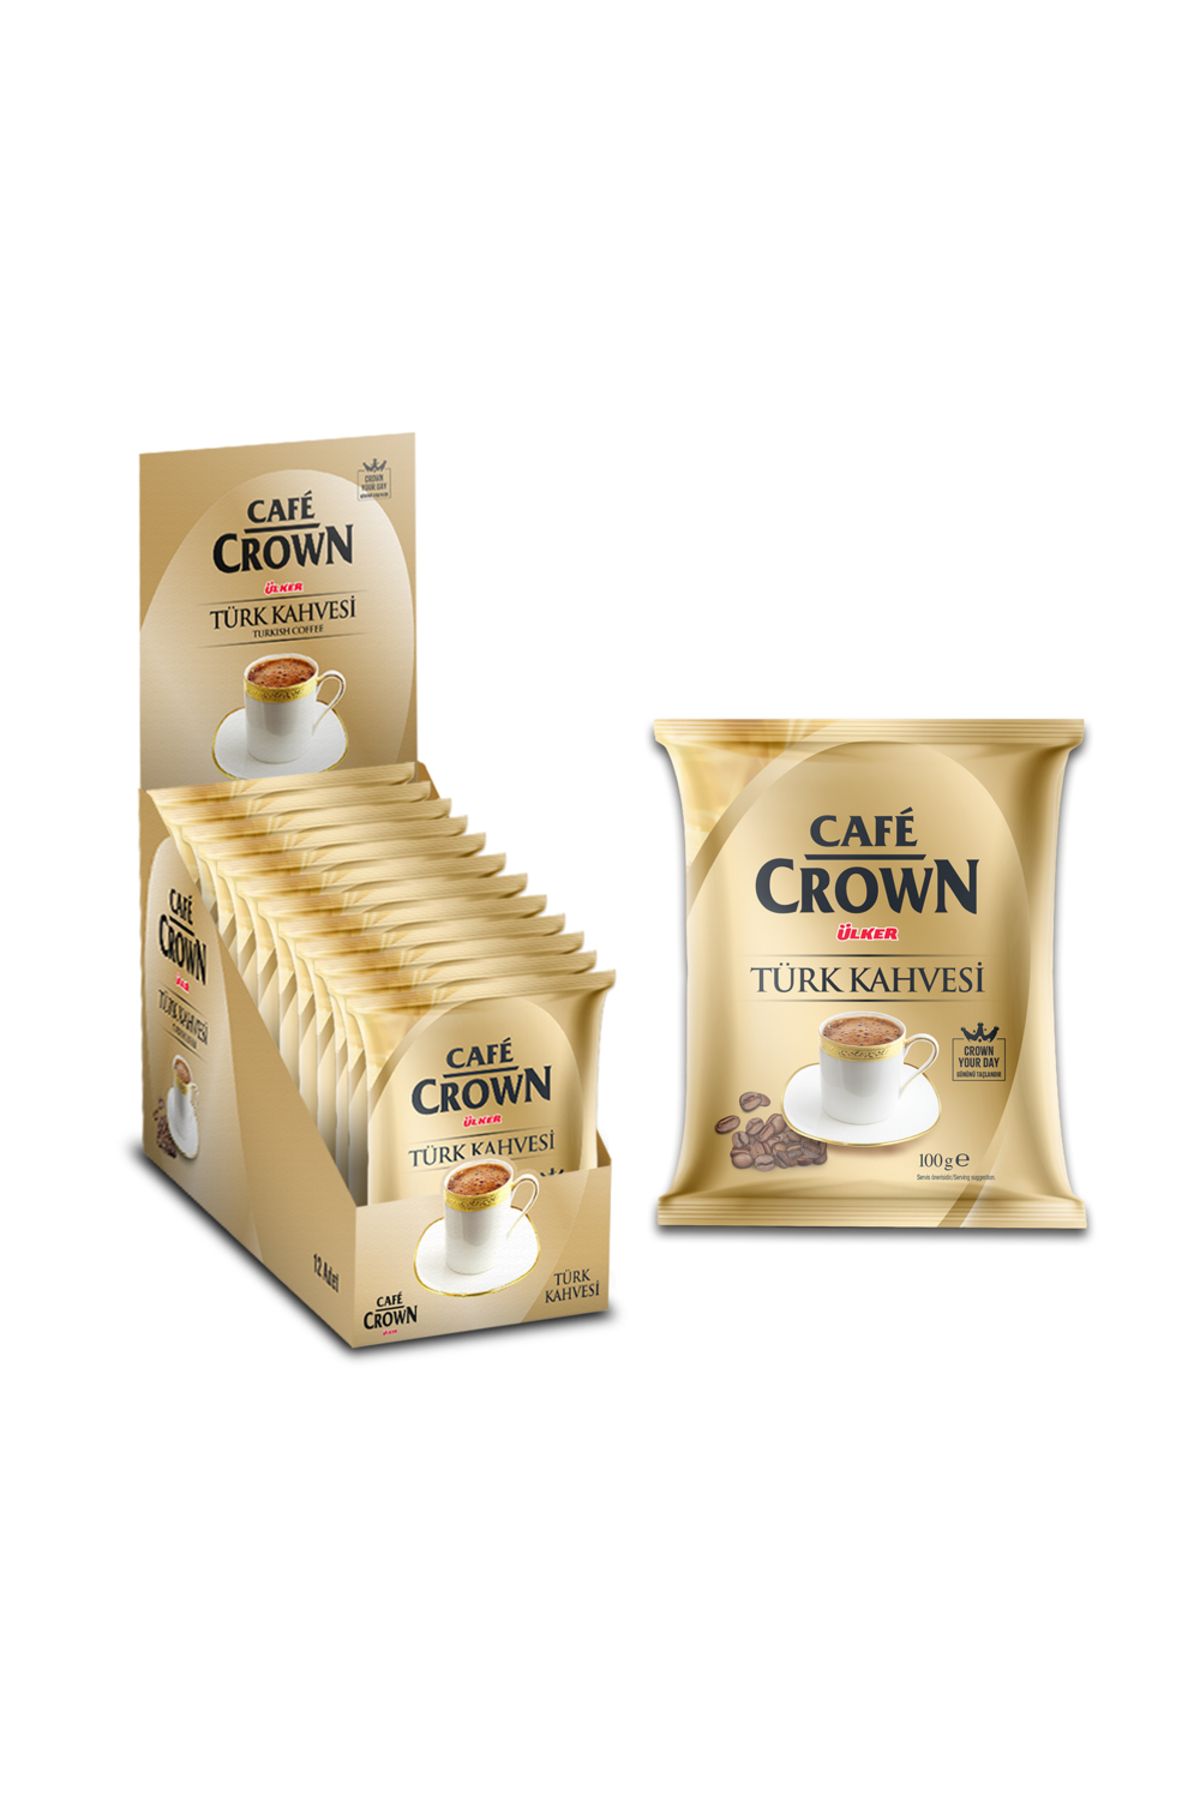 Cafe Crown Türk Kahvesi Modelleri, Fiyatları - Trendyol